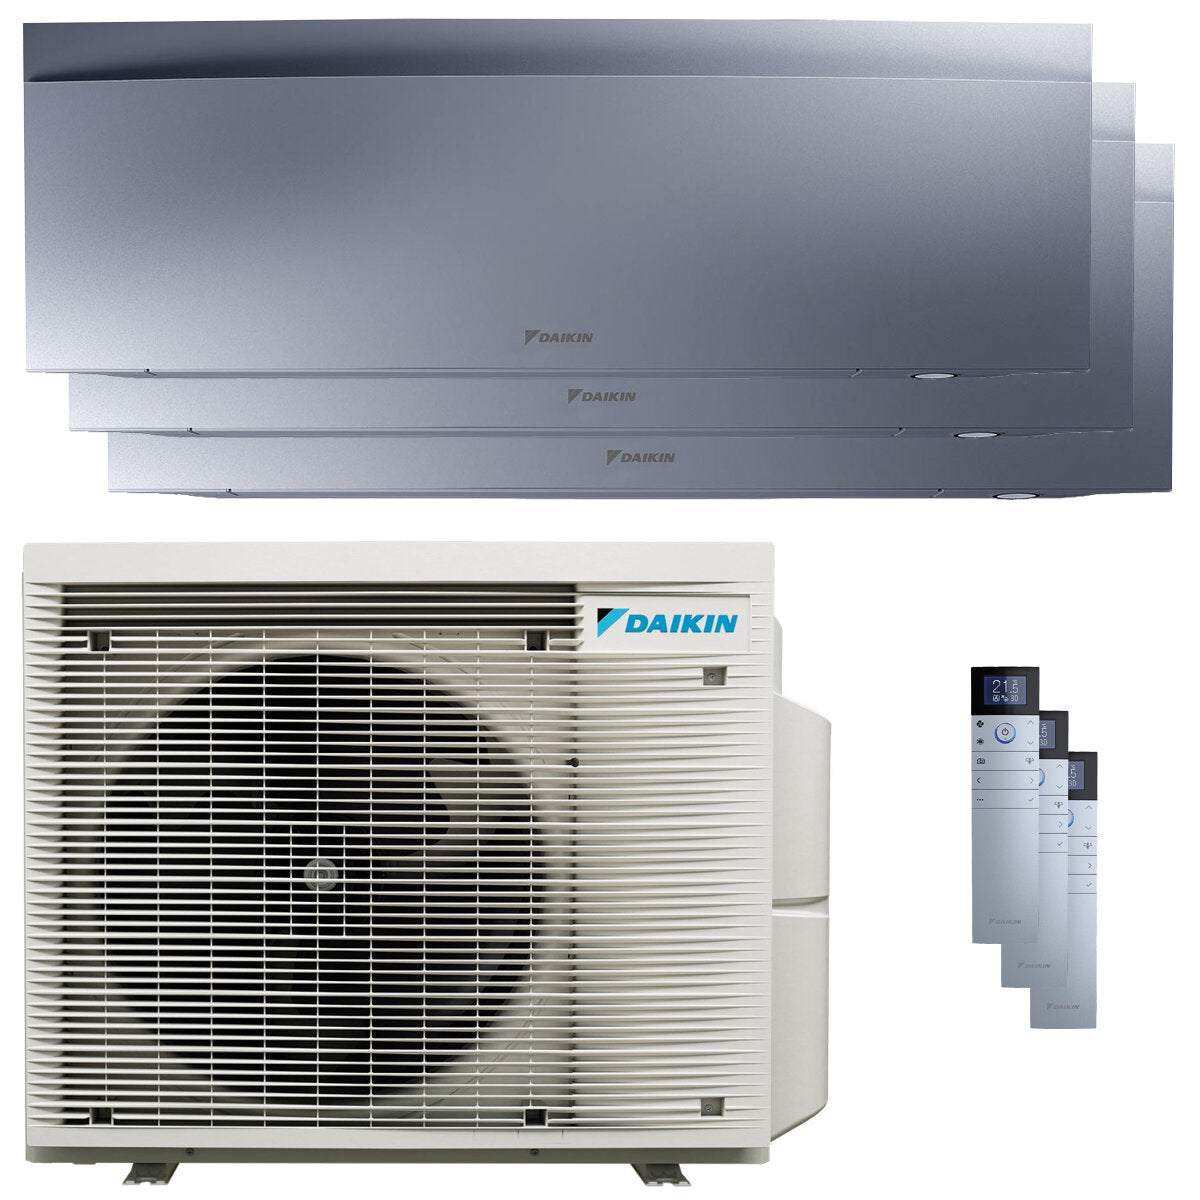 Daikin Emura 3 trial split air conditioner 12000+15000+18000 BTU inverter A+ wifi outdoor unit 7.4 kW Silver